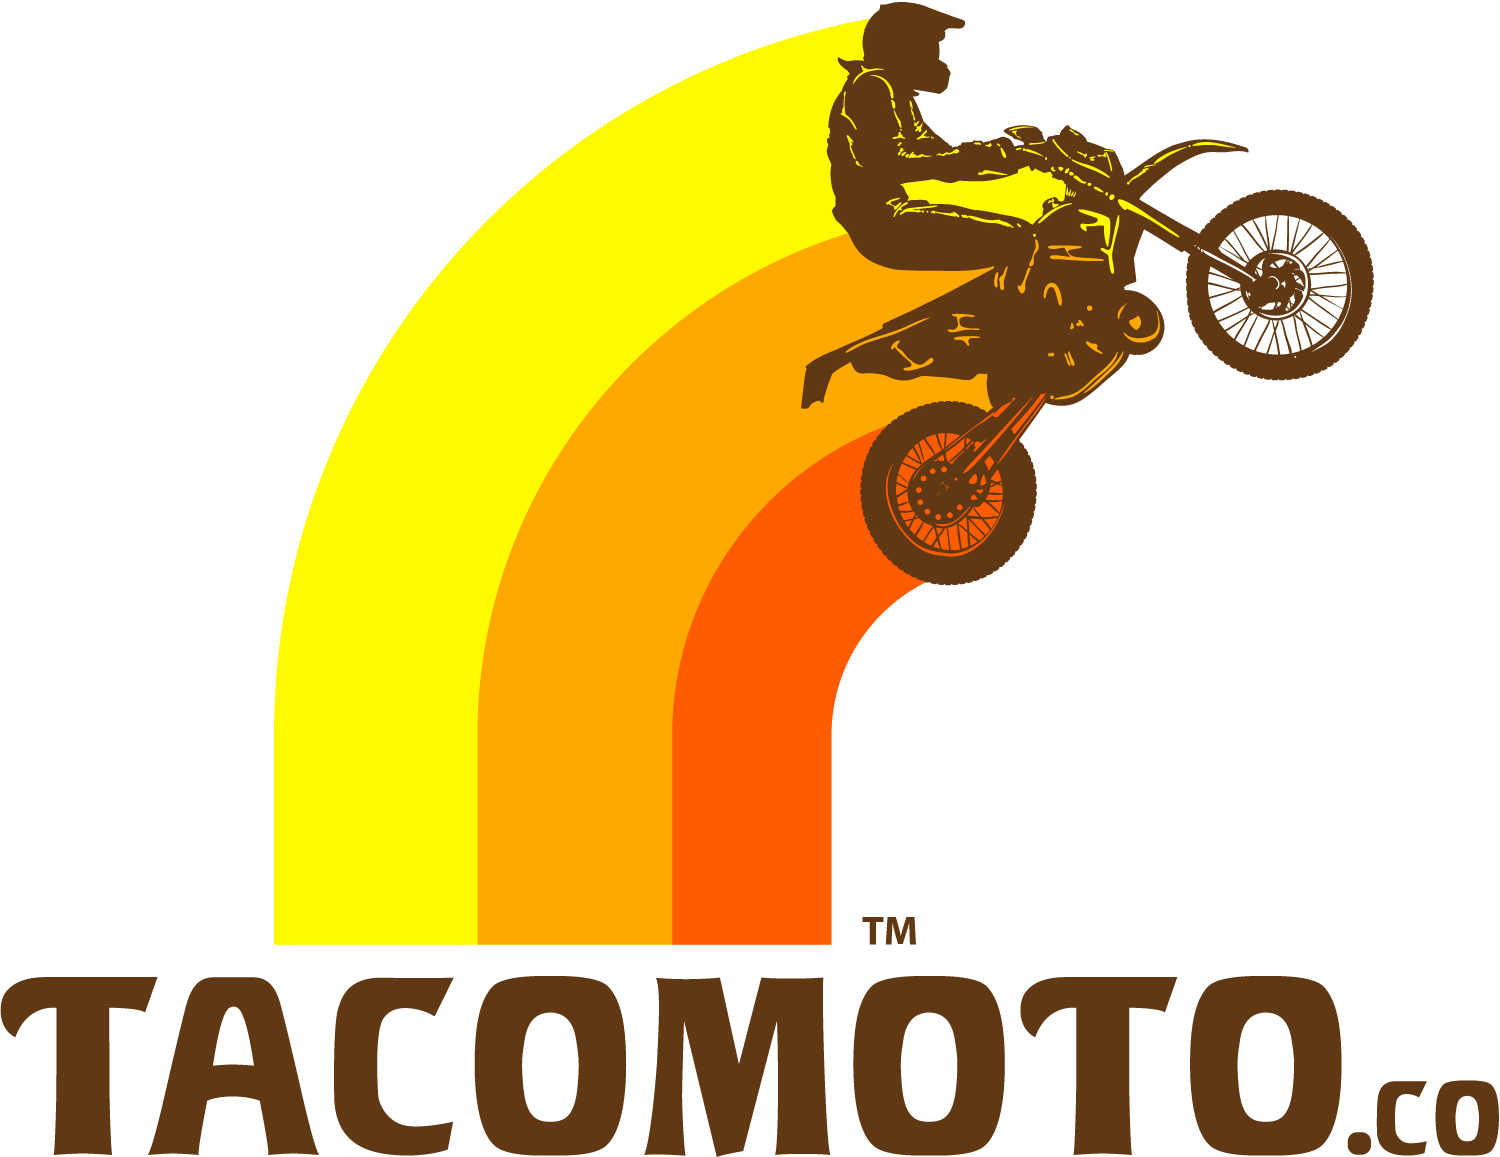 TM DESIGNWORKS FULL COVERAGE SKID PALTE – Taco Moto Co.